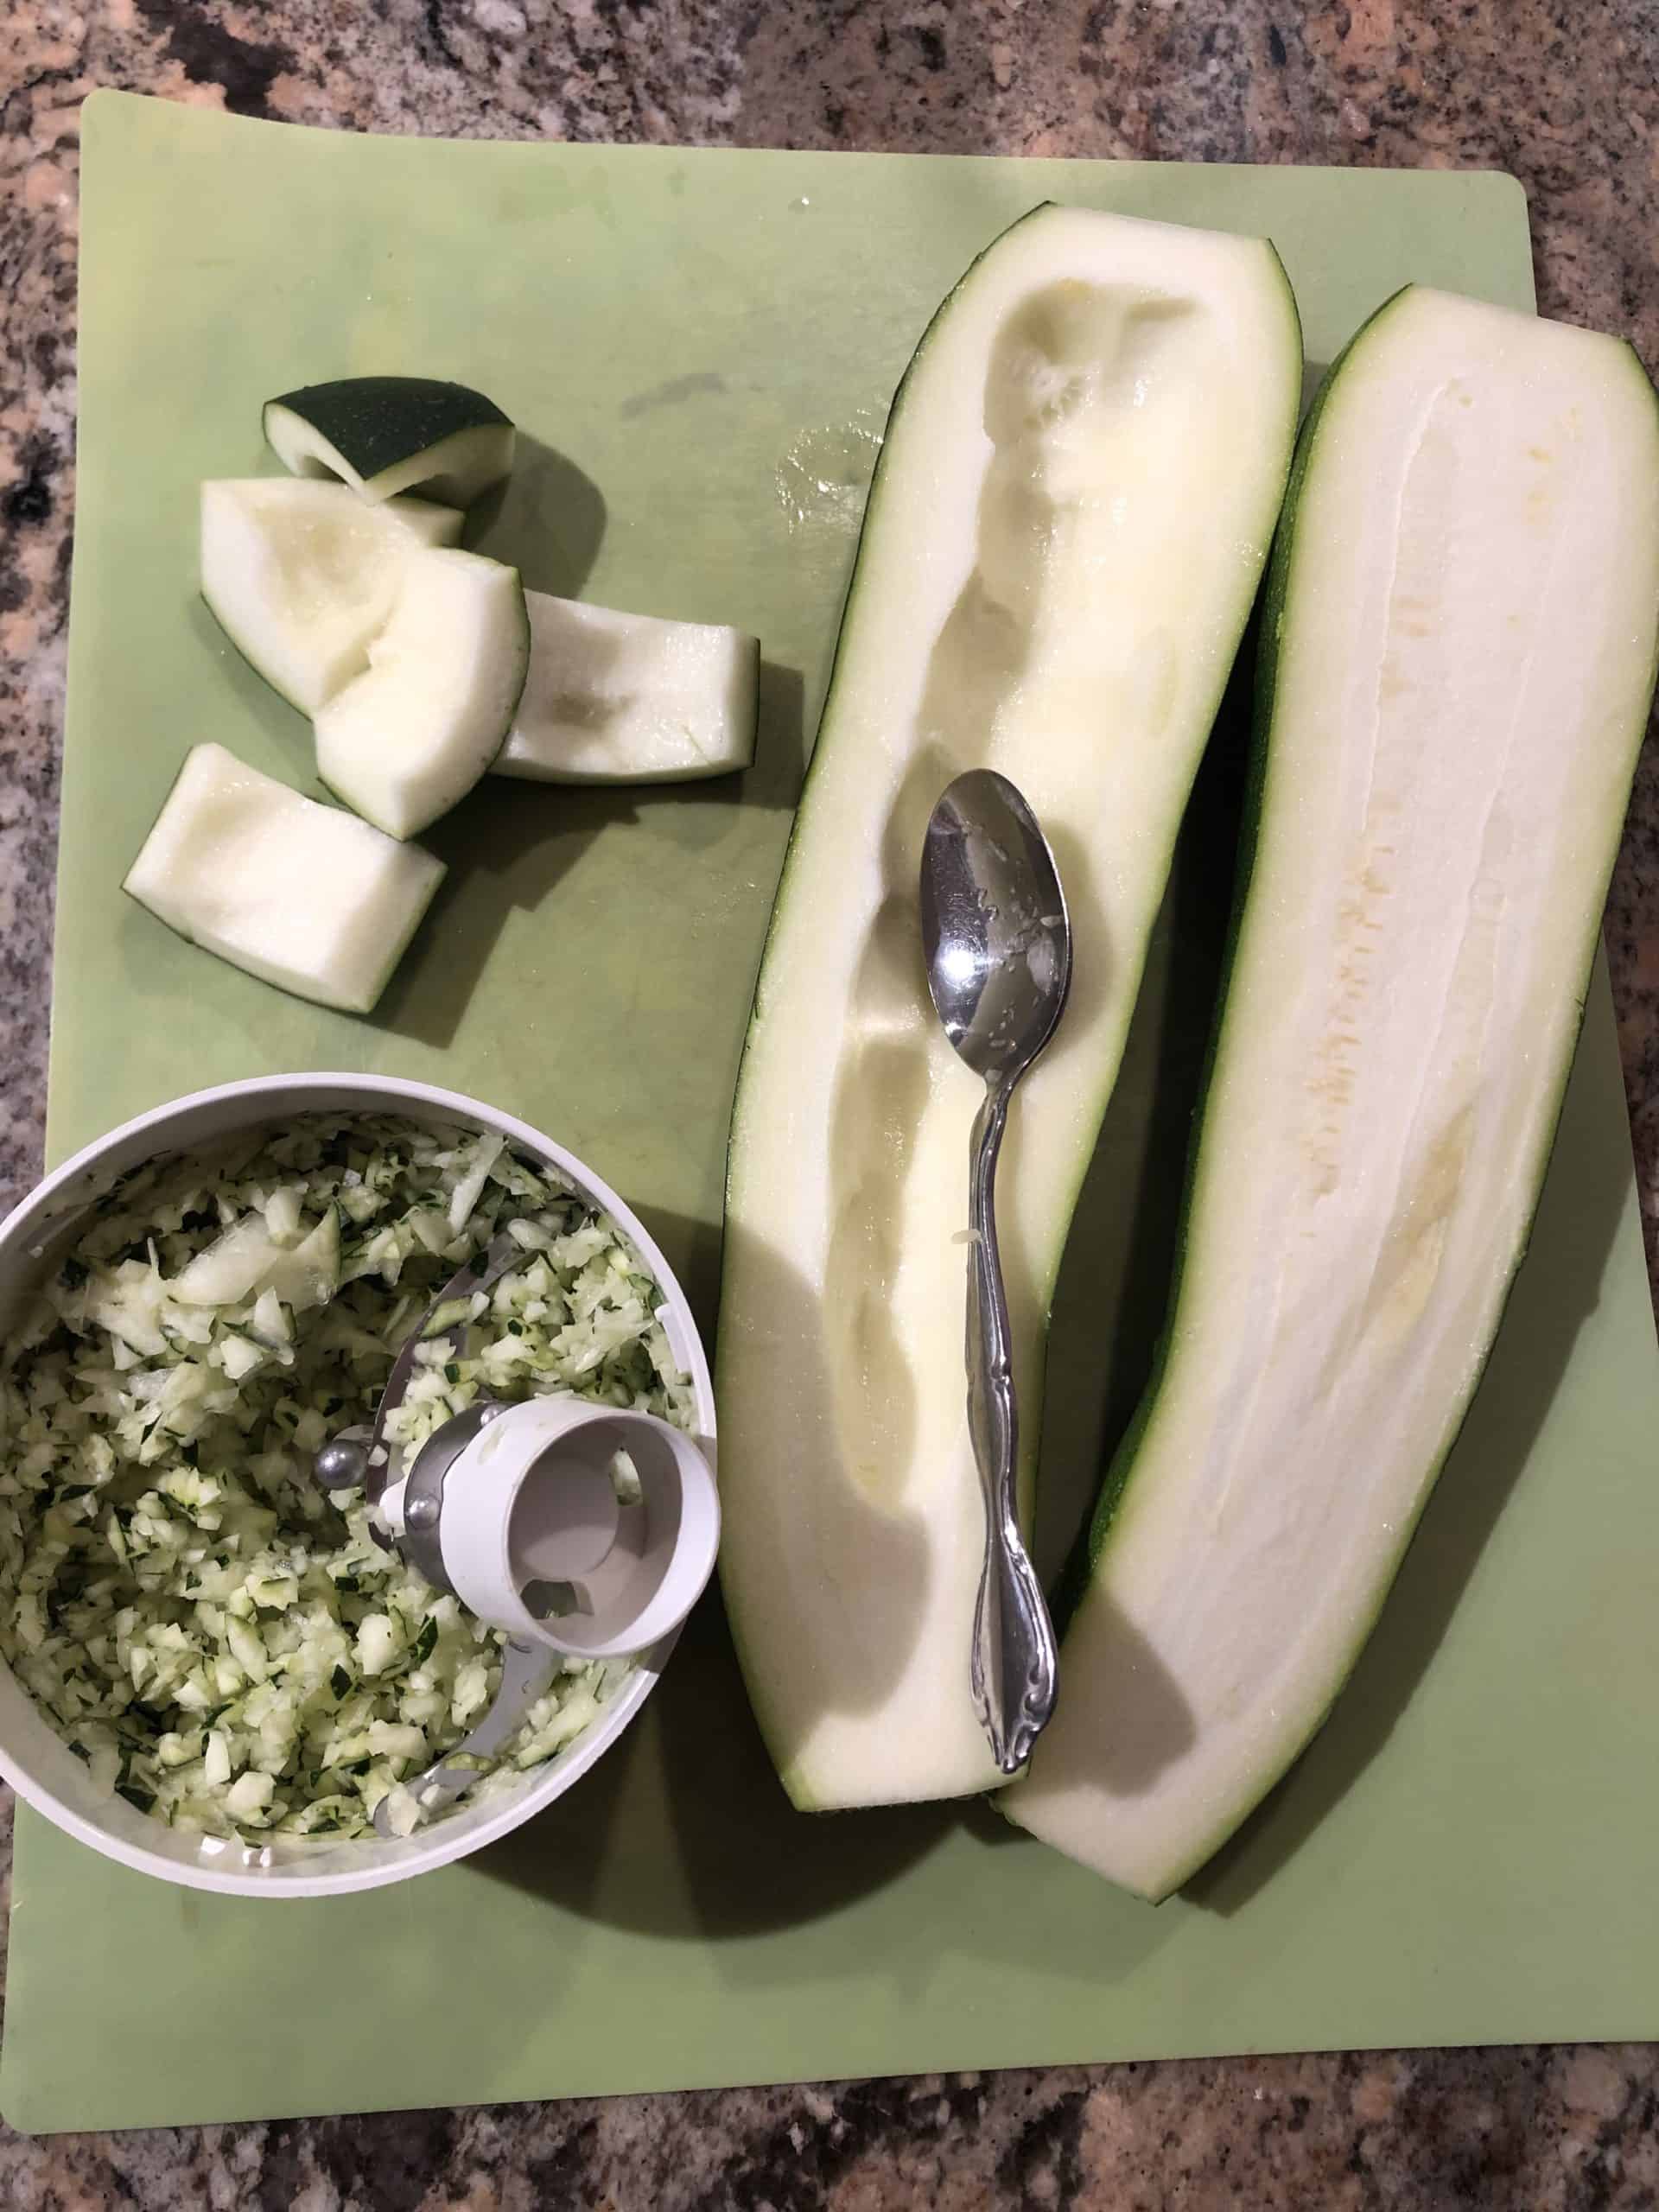 Zucchini - seeded, chunked and chopped